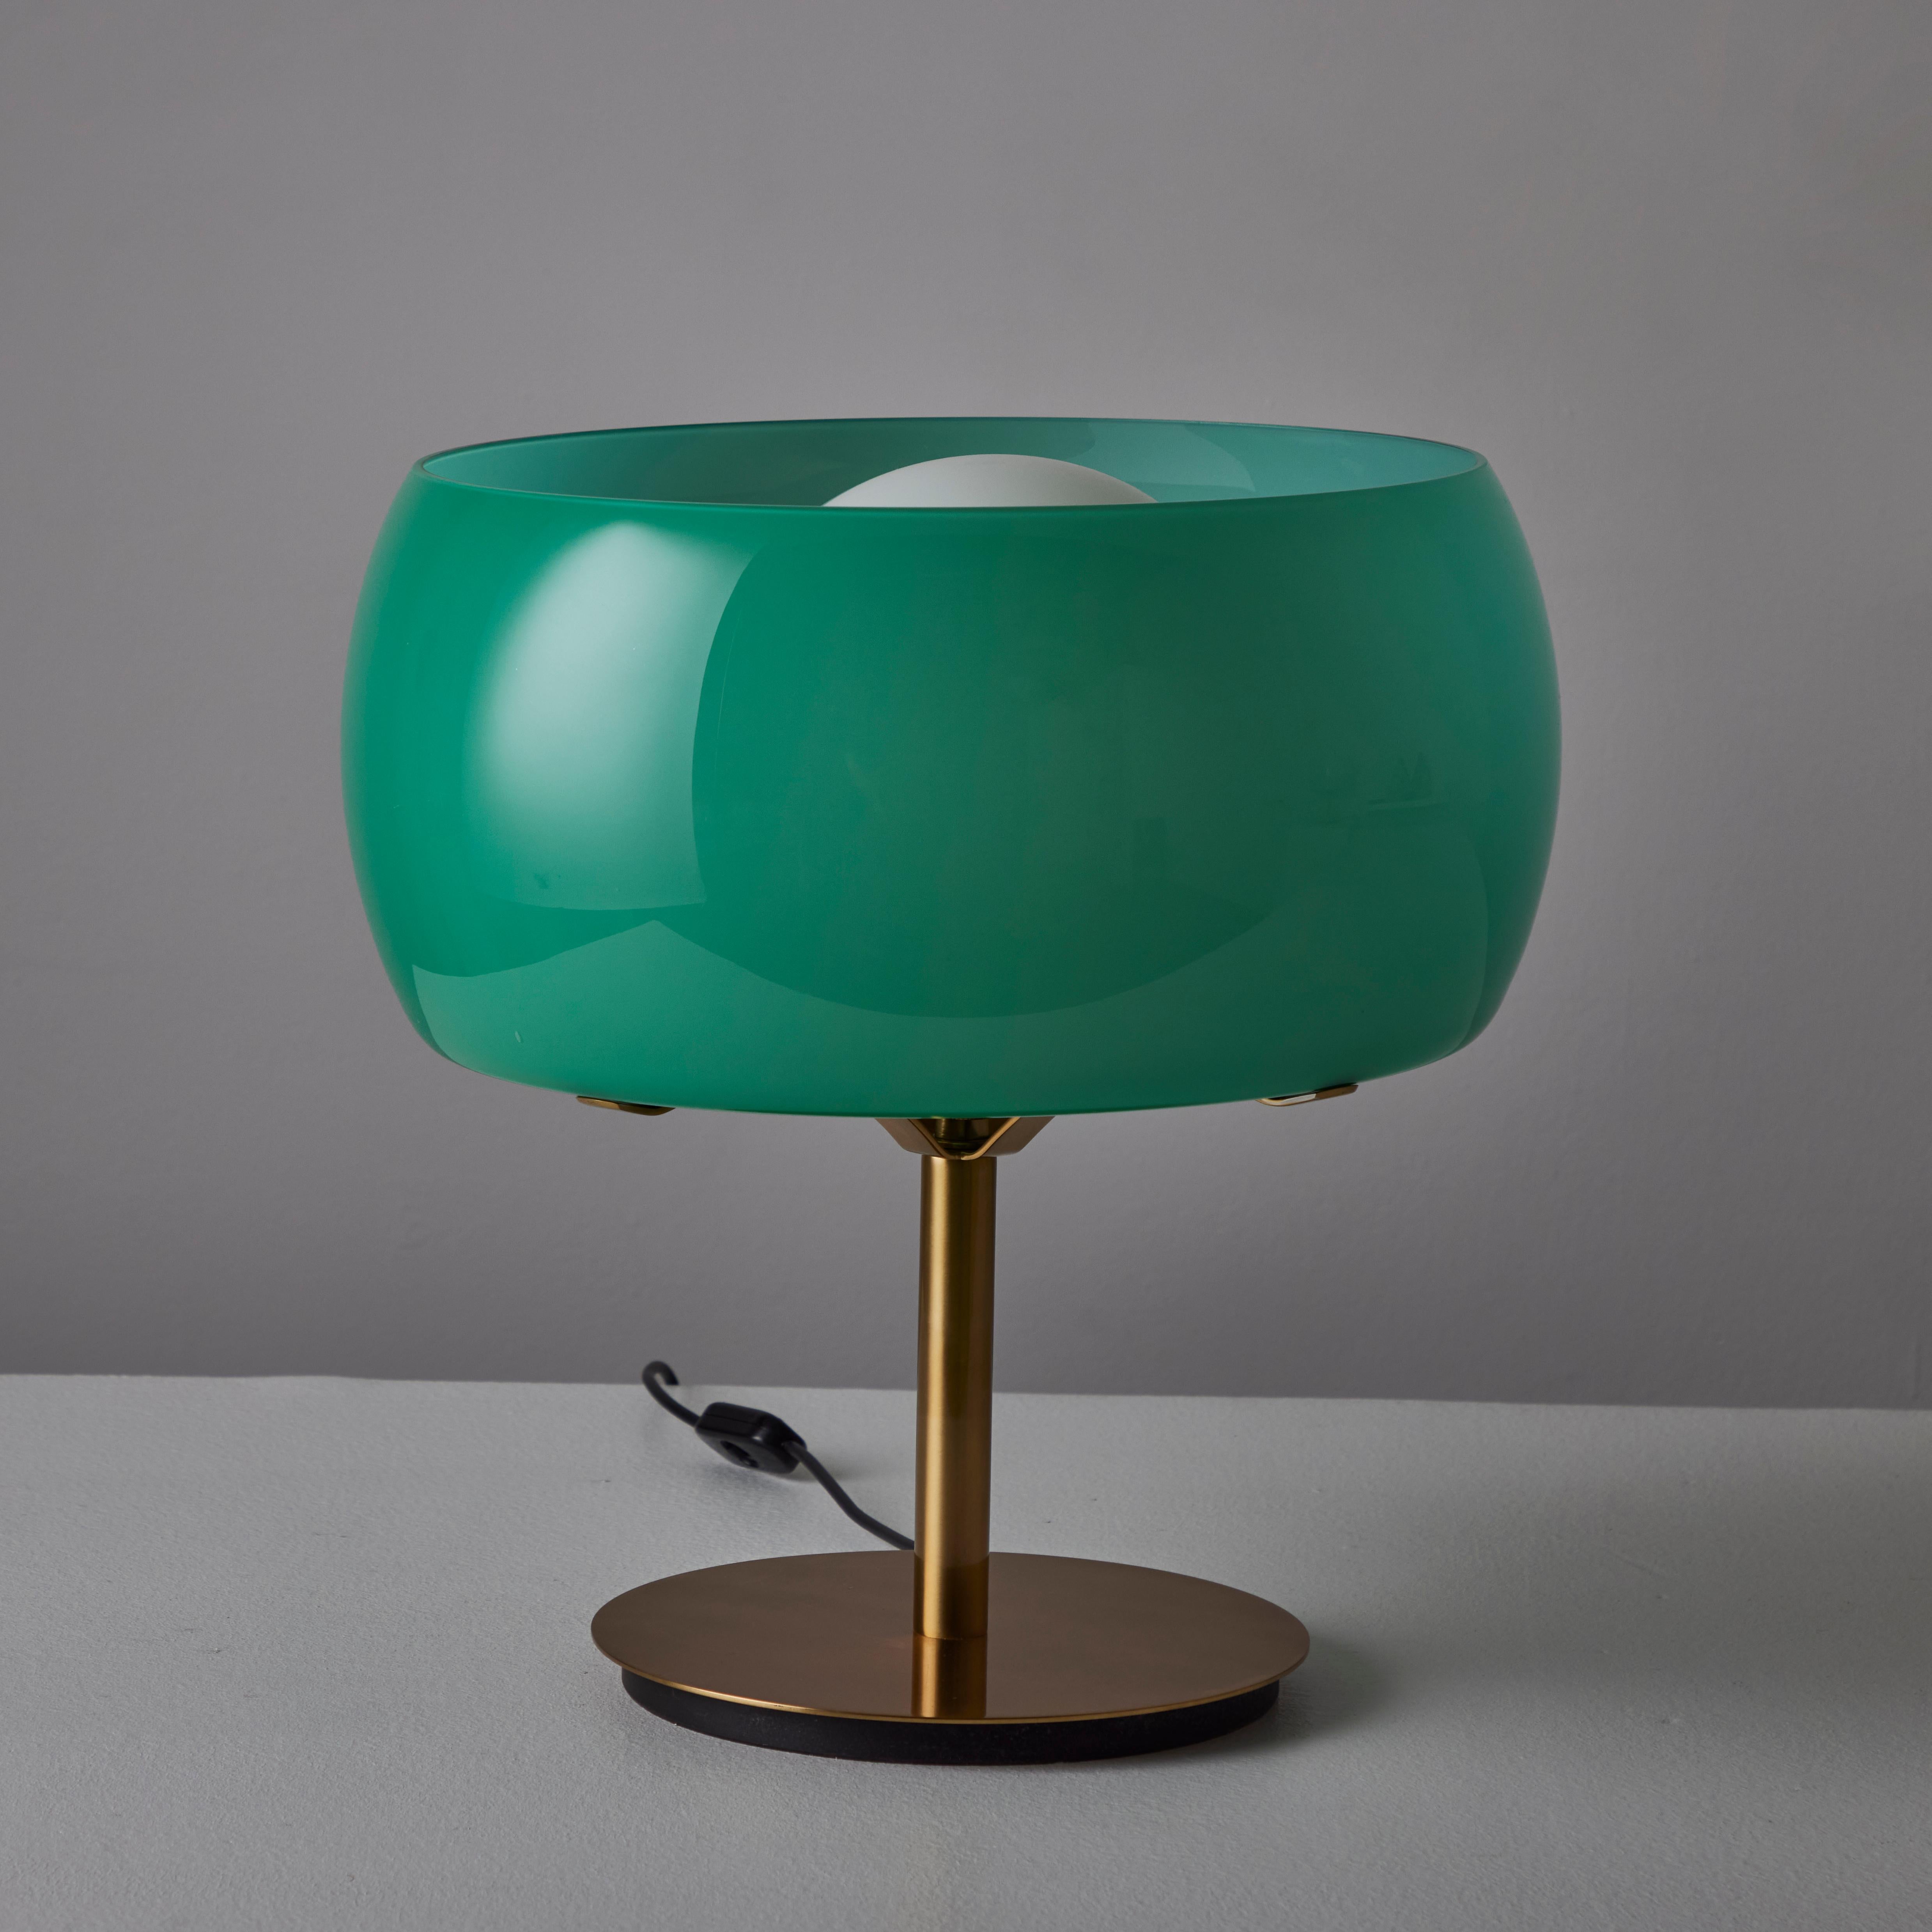 Seltenes Paar der Tischleuchte 'Erse' von Vico Magistretti für Artemide. Entworfen und hergestellt in Italien, 1964. Sockel und Stiel der Leuchte sind aus poliertem Messing gefertigt. Der äußere kugelförmige Schirm besteht aus tealfarbenem Glas, das